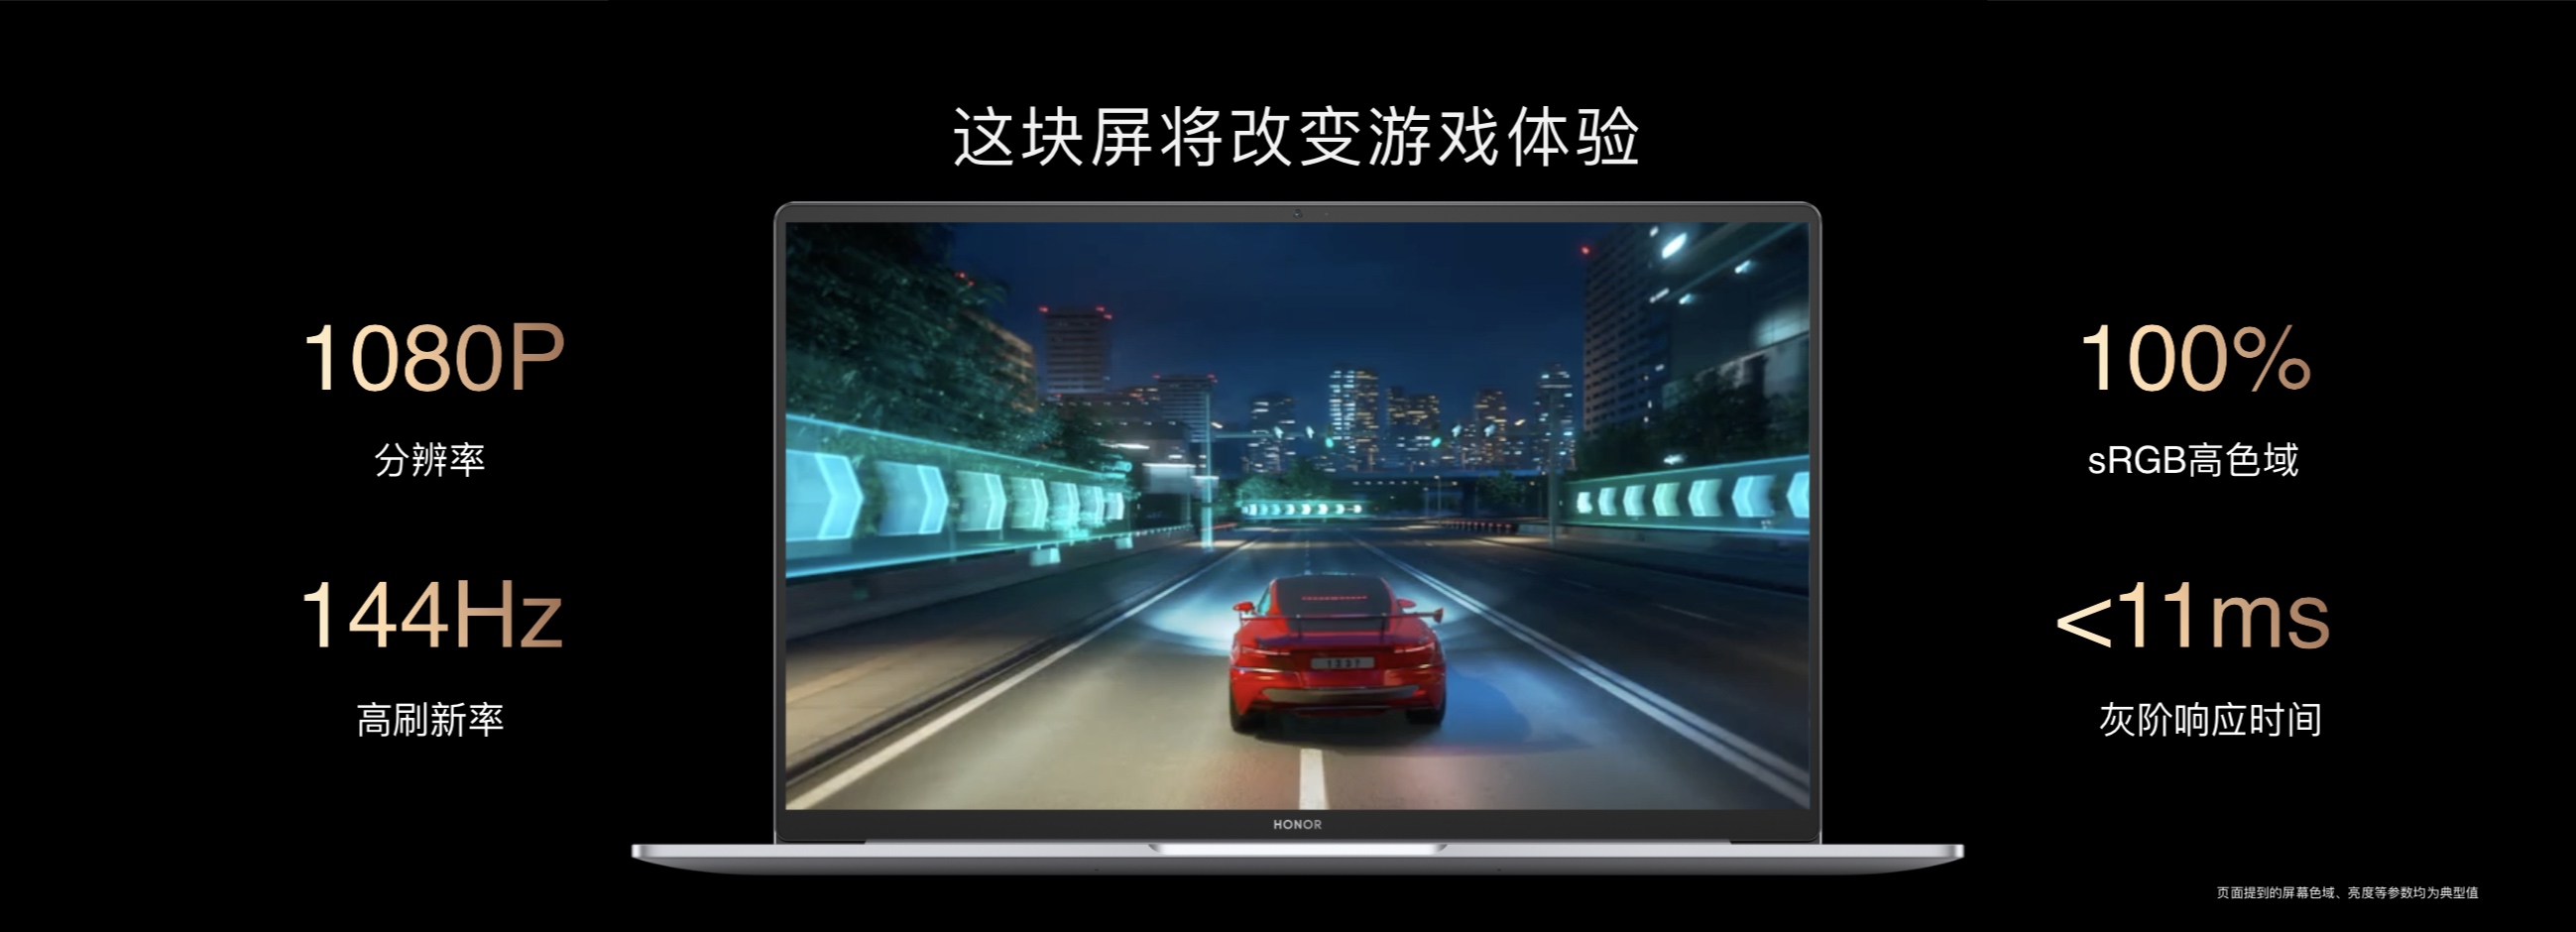 荣耀智慧生活新品发布会：荣耀MagicBook V 14领衔众新品助力高端化进程加速